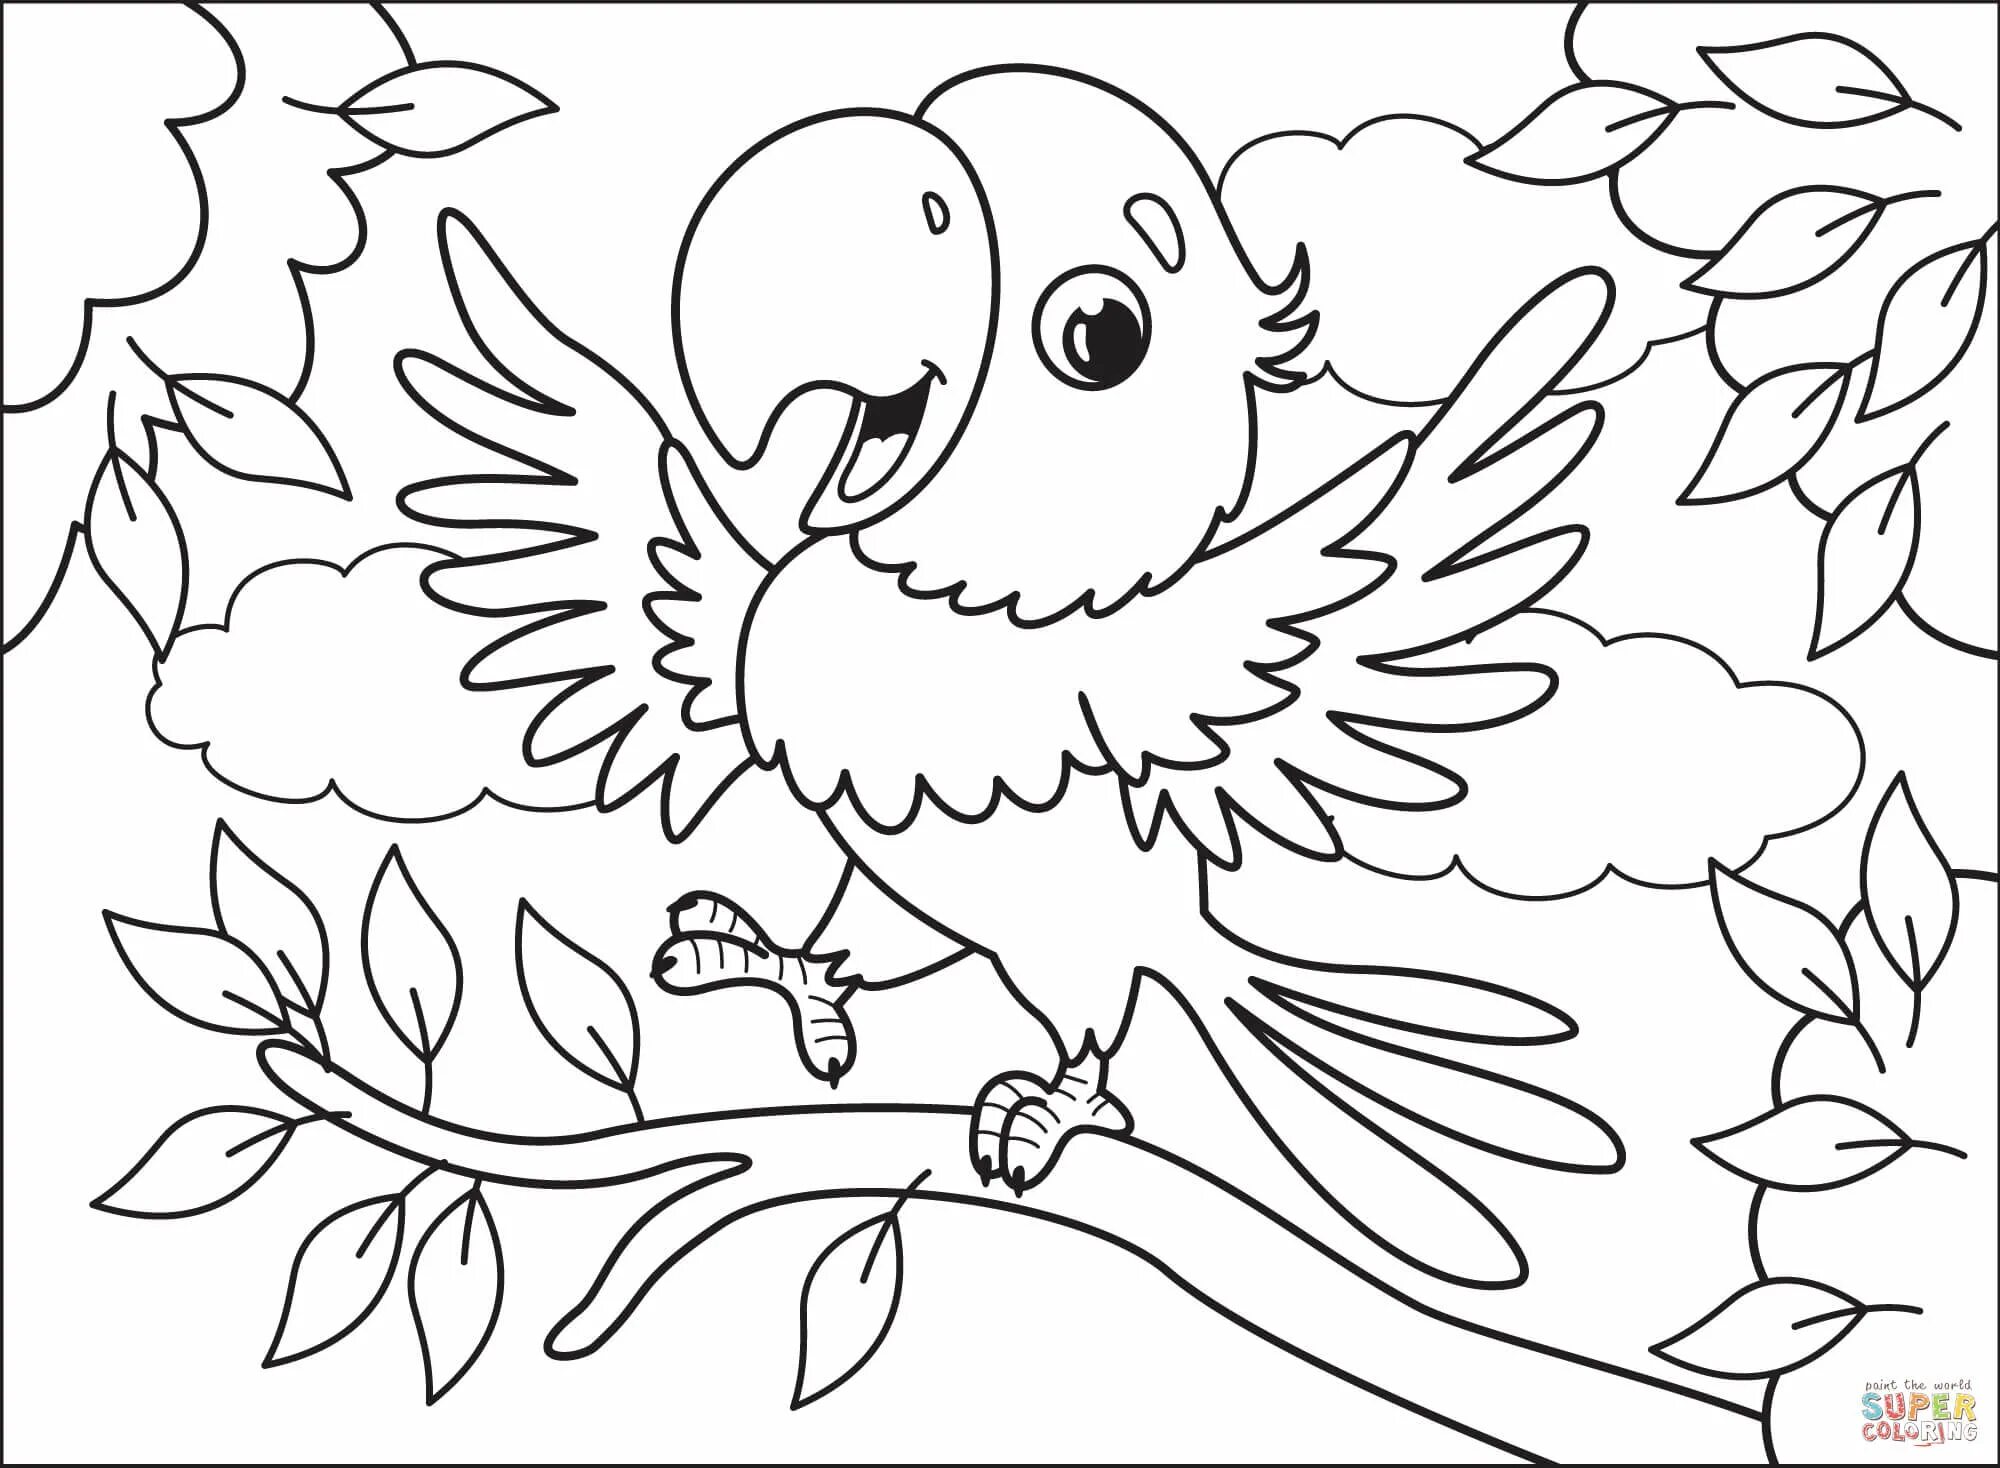 Незабываемая раскраска попугай для детей 6-7 лет